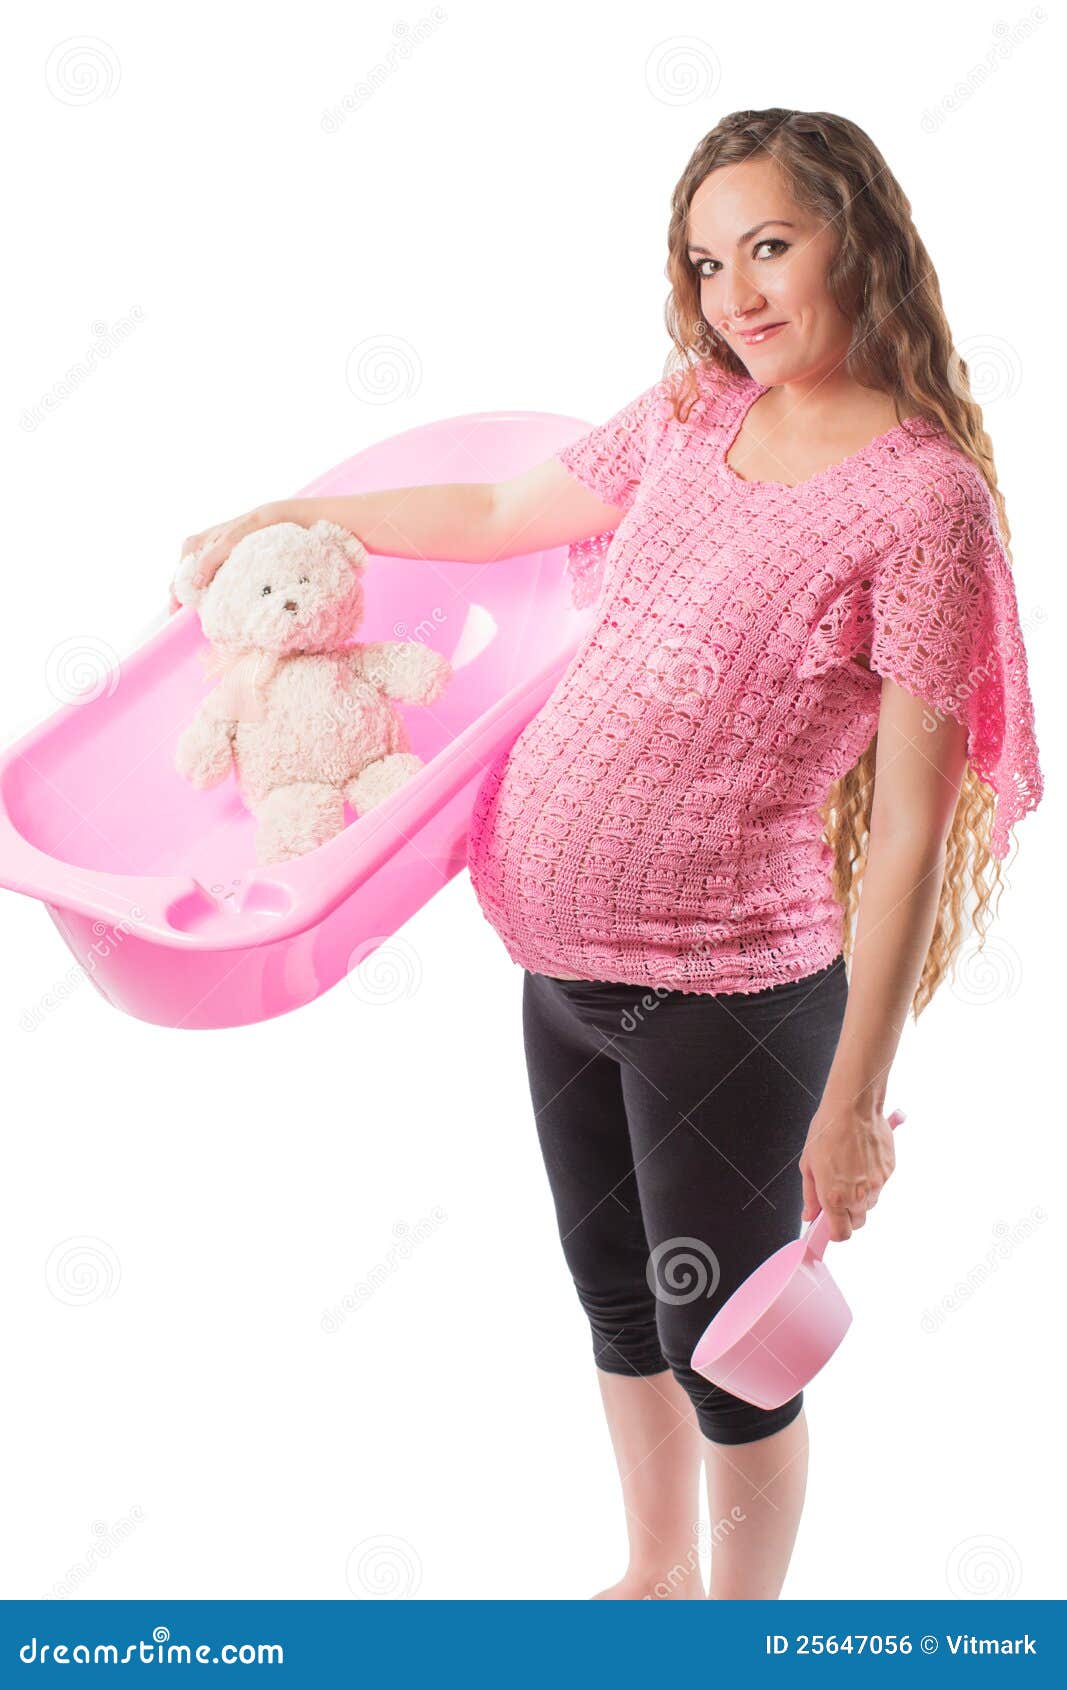 pregnant woman bathe with toy teddy bear in tub